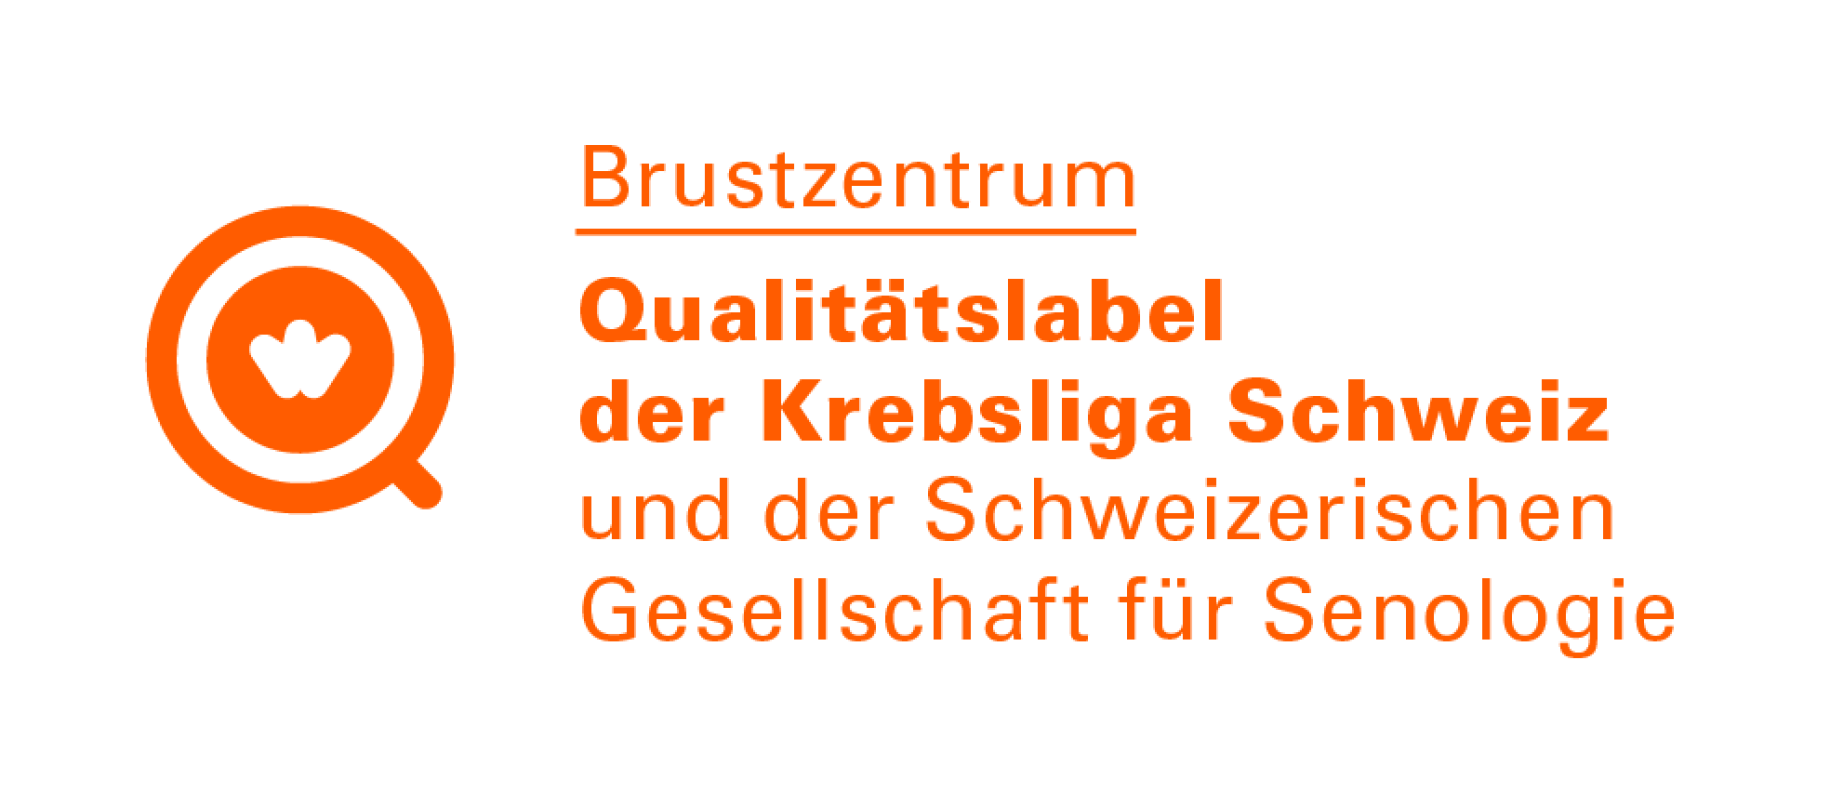 Rotoranges Logo: Brustzentrum, Qualitätslabel der Krebsliga Schweiz und der Schweizerischen Gesellschaft für Senologie